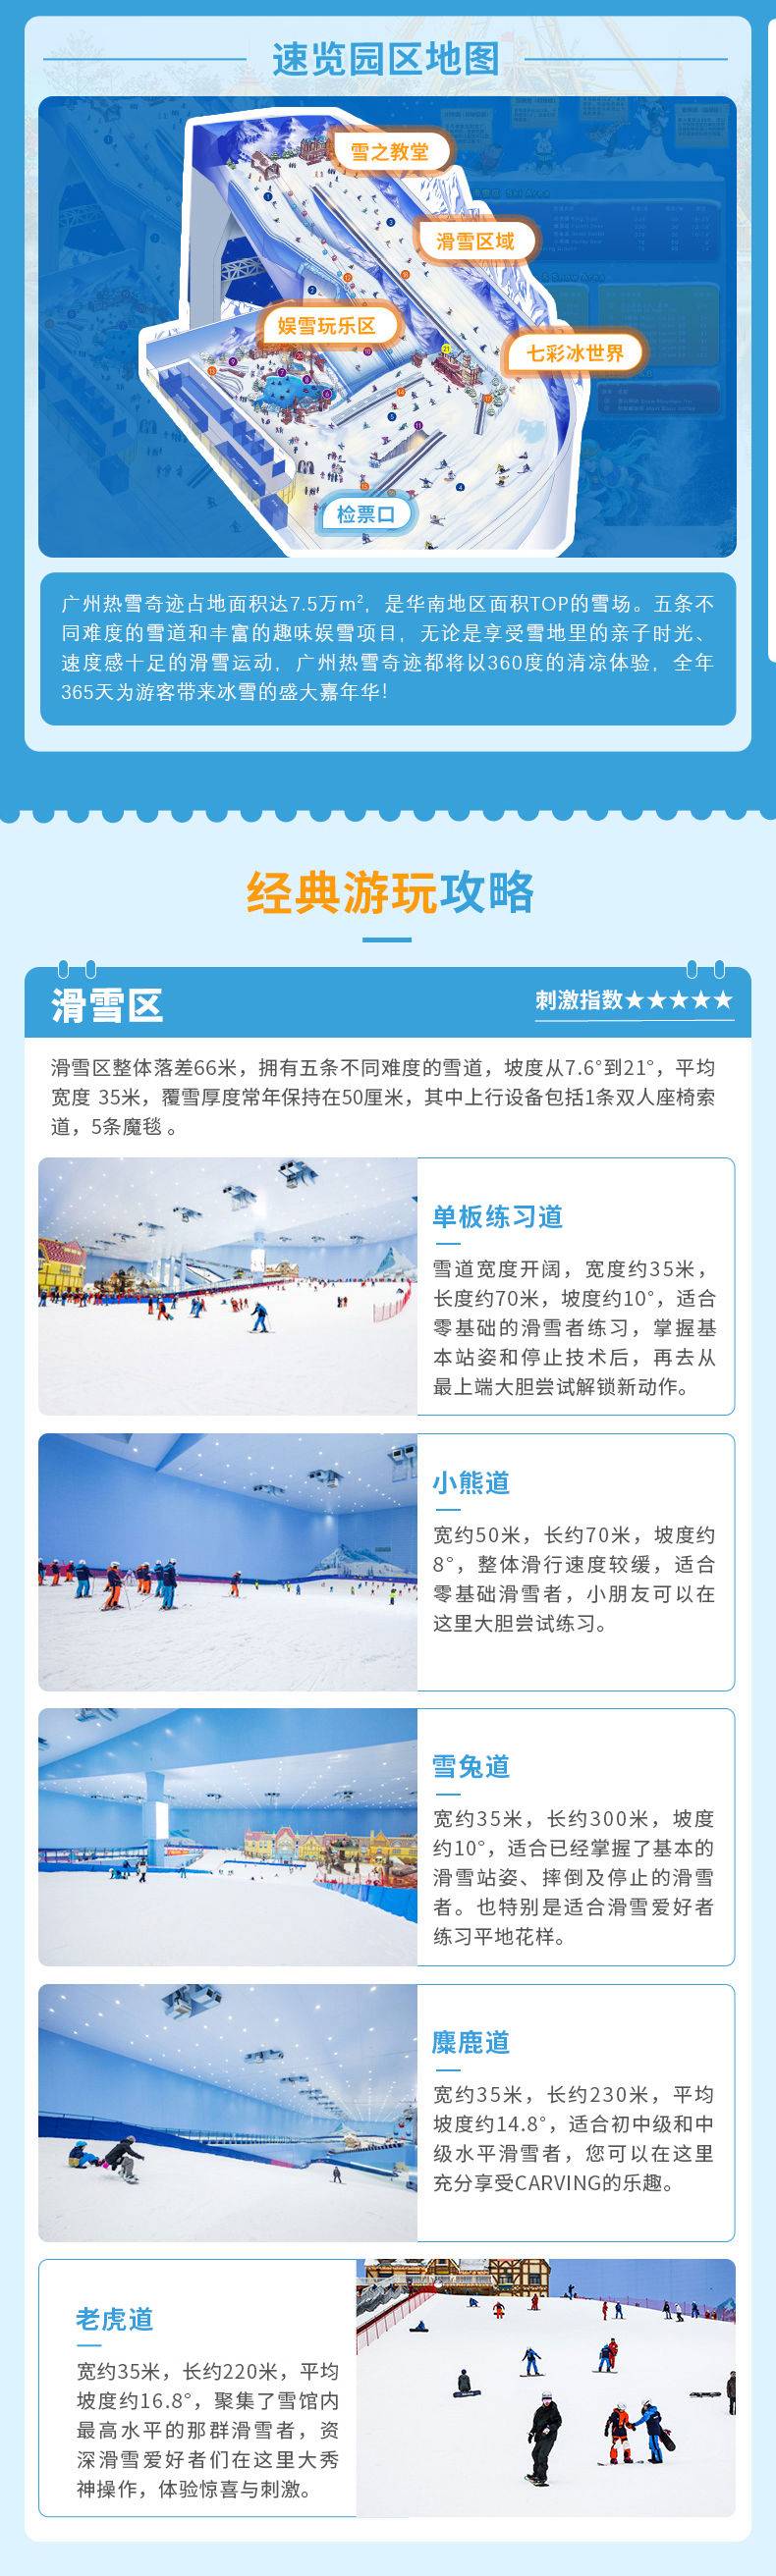 广州热雪奇迹初/中级道3小时滑雪（含马戏）-淡季